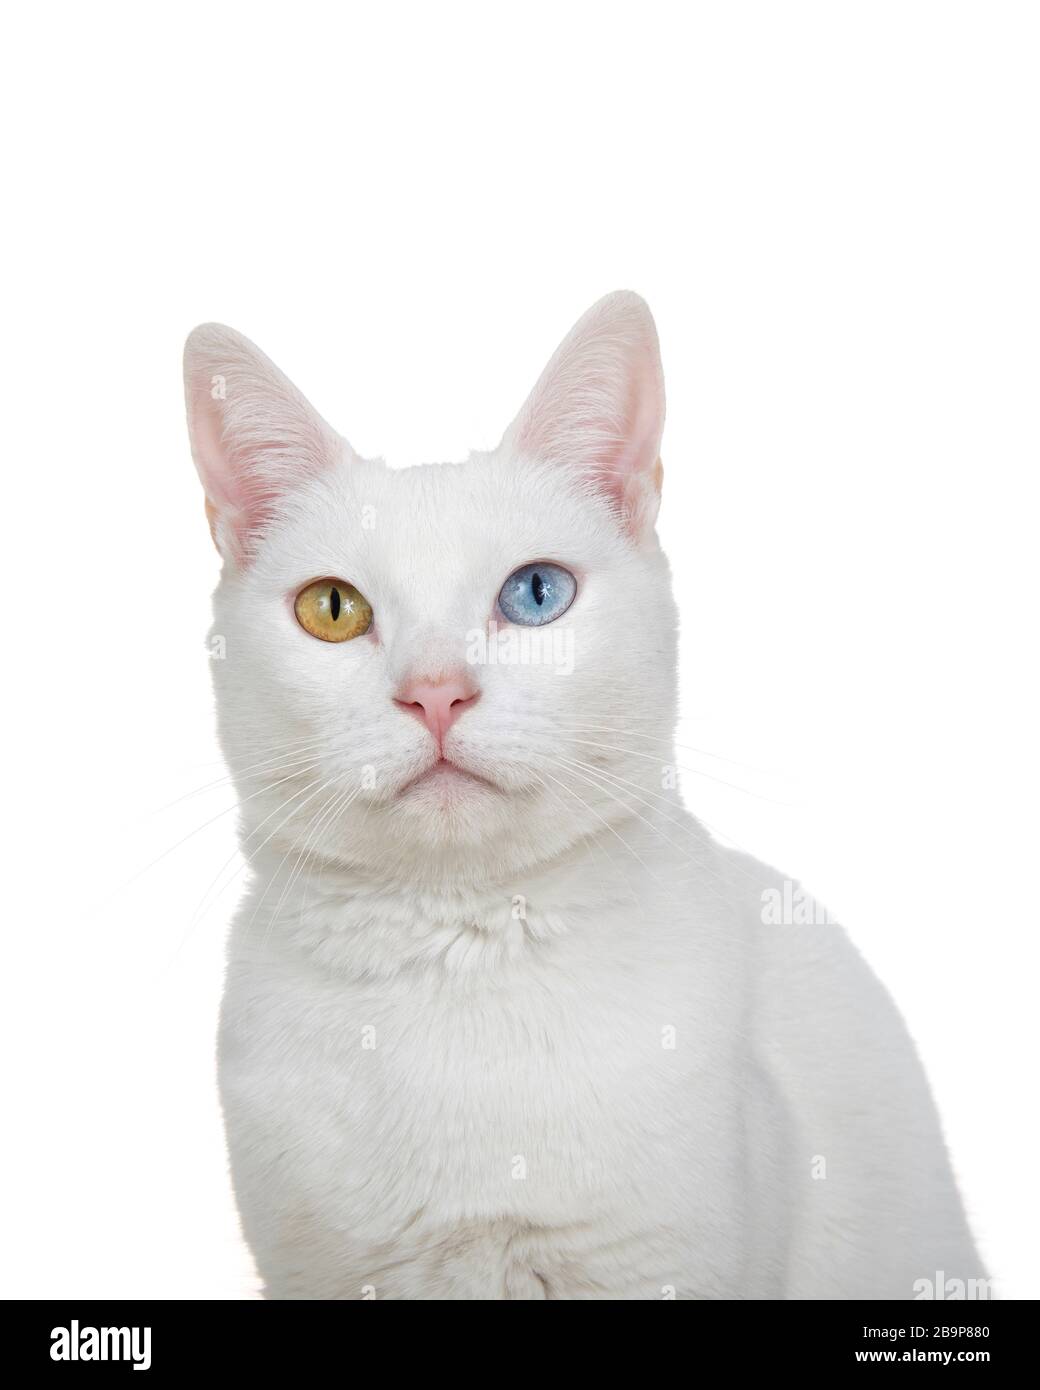 Gros plan portrait d'un chat blanc avec hétérochromie, yeux impairs, regardant directement le spectateur. Isolé sur fond blanc. Banque D'Images